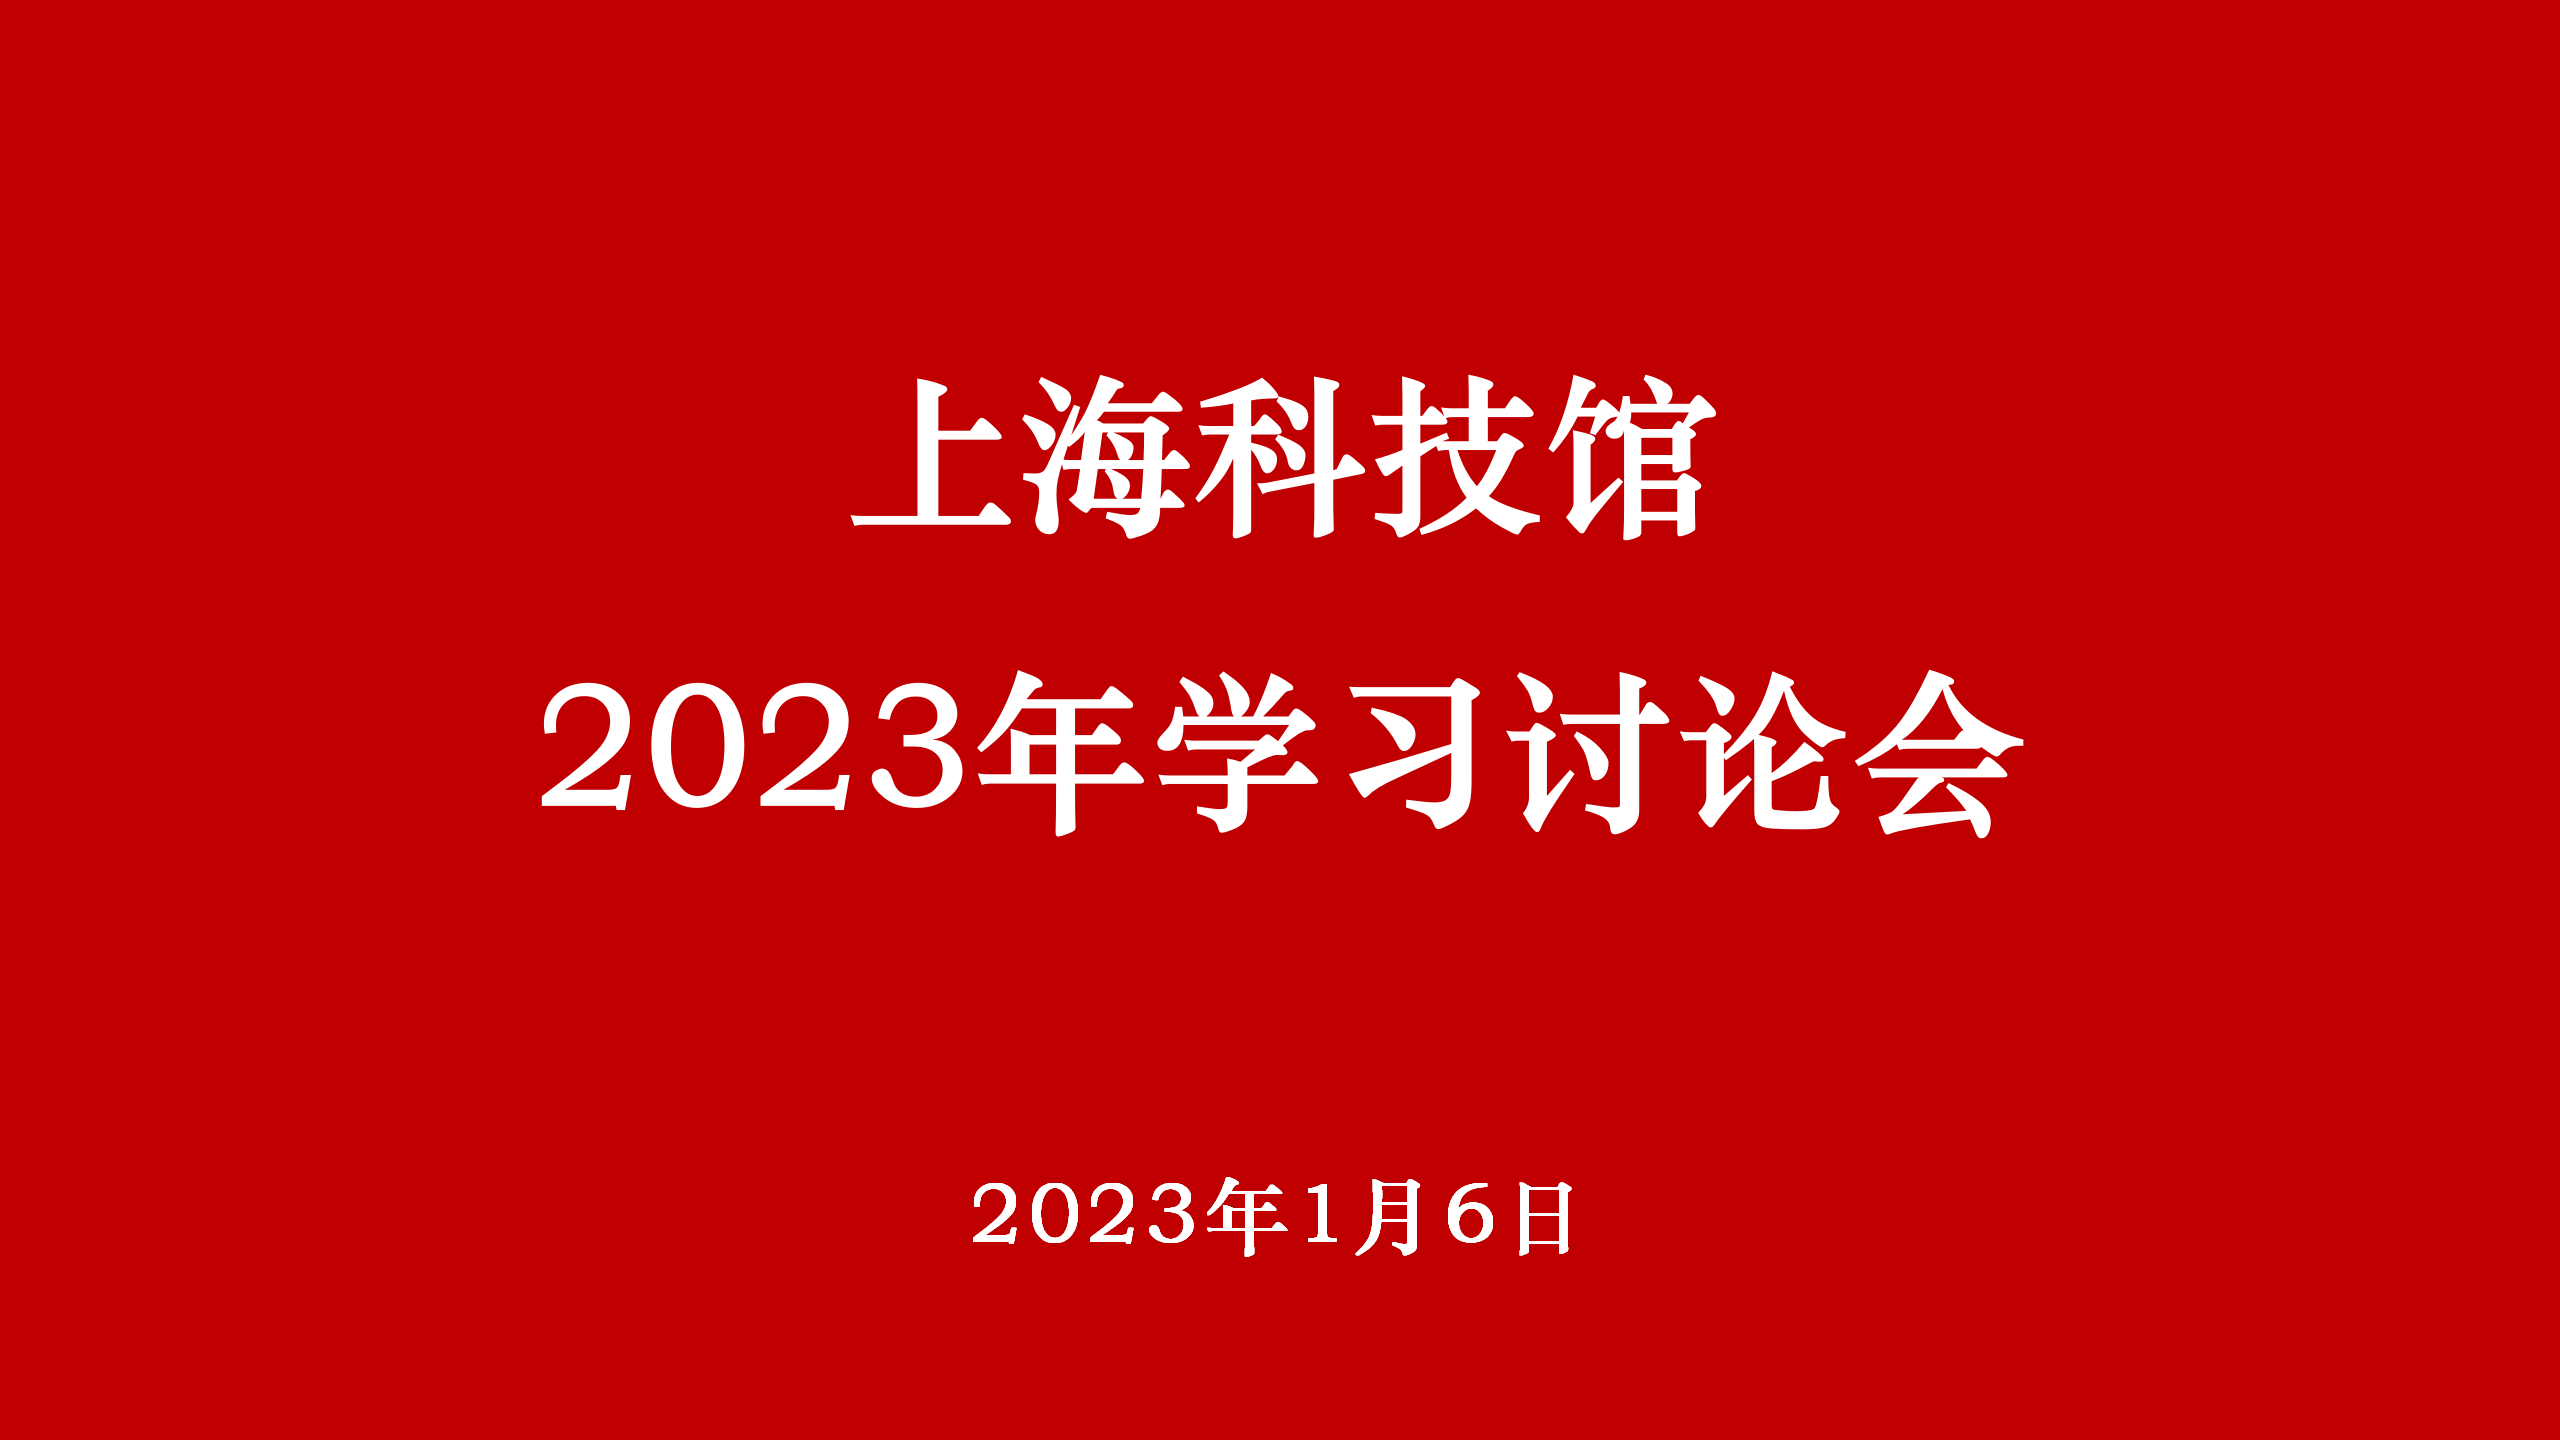 上海科技馆召开2023年学习讨论会